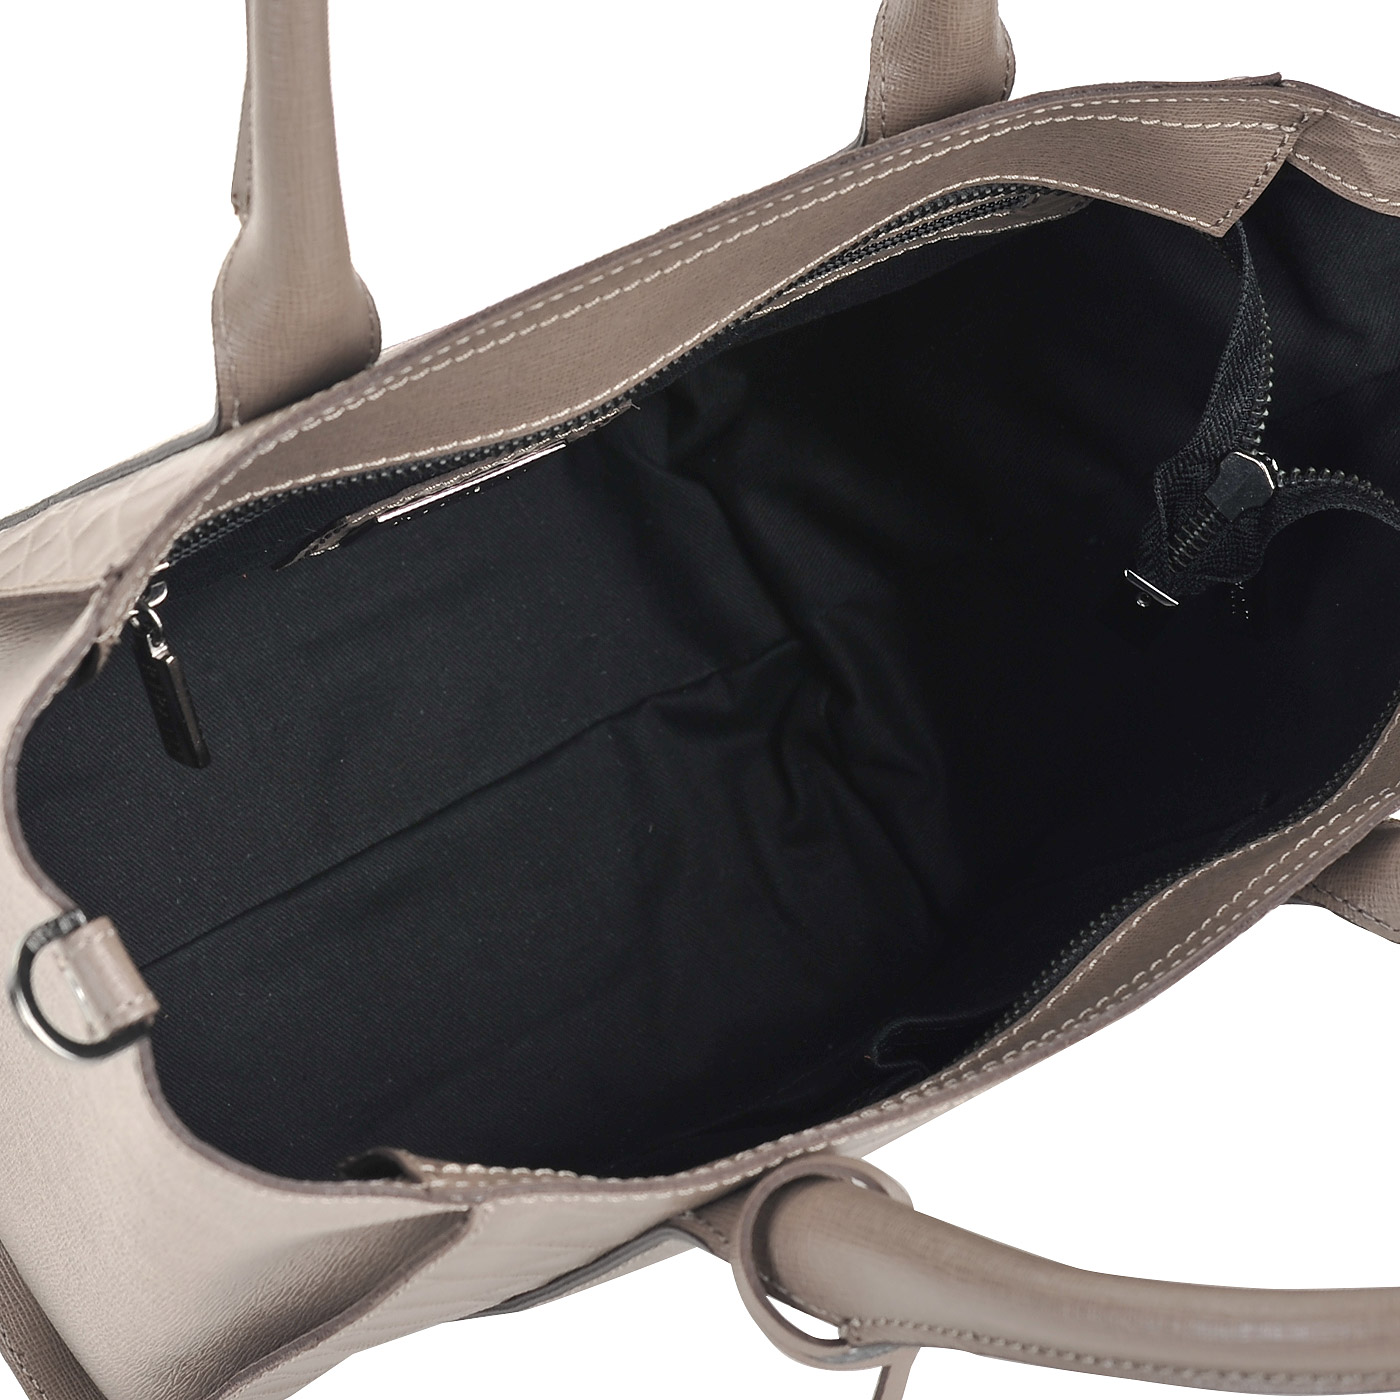 Женская кожаная сумка с плечевым ремешком Ripani Cannella